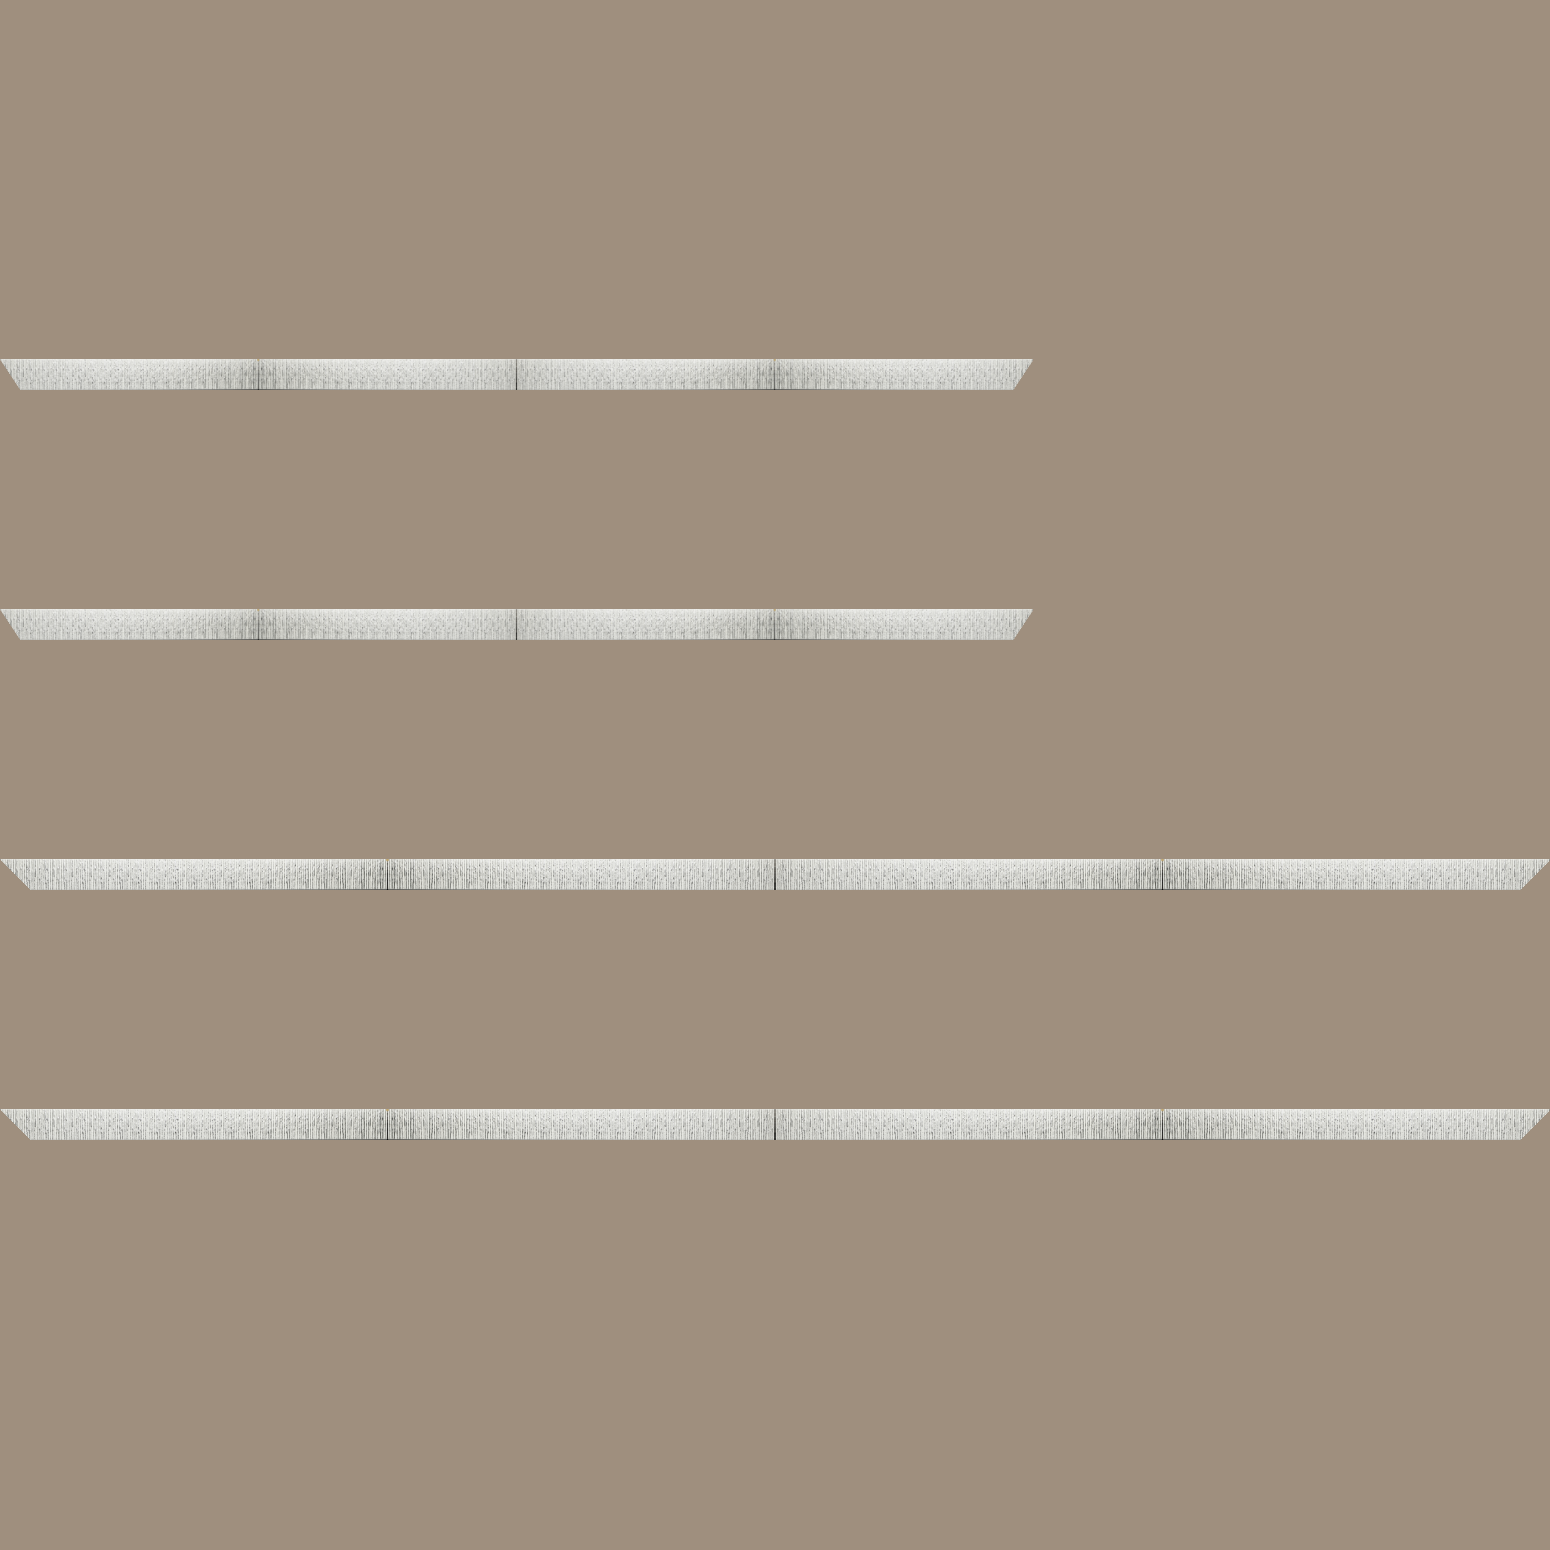 Baguette bois profil plat largeur 10.5cm couleur blanc mat strié argent chromé en relief - 70x100